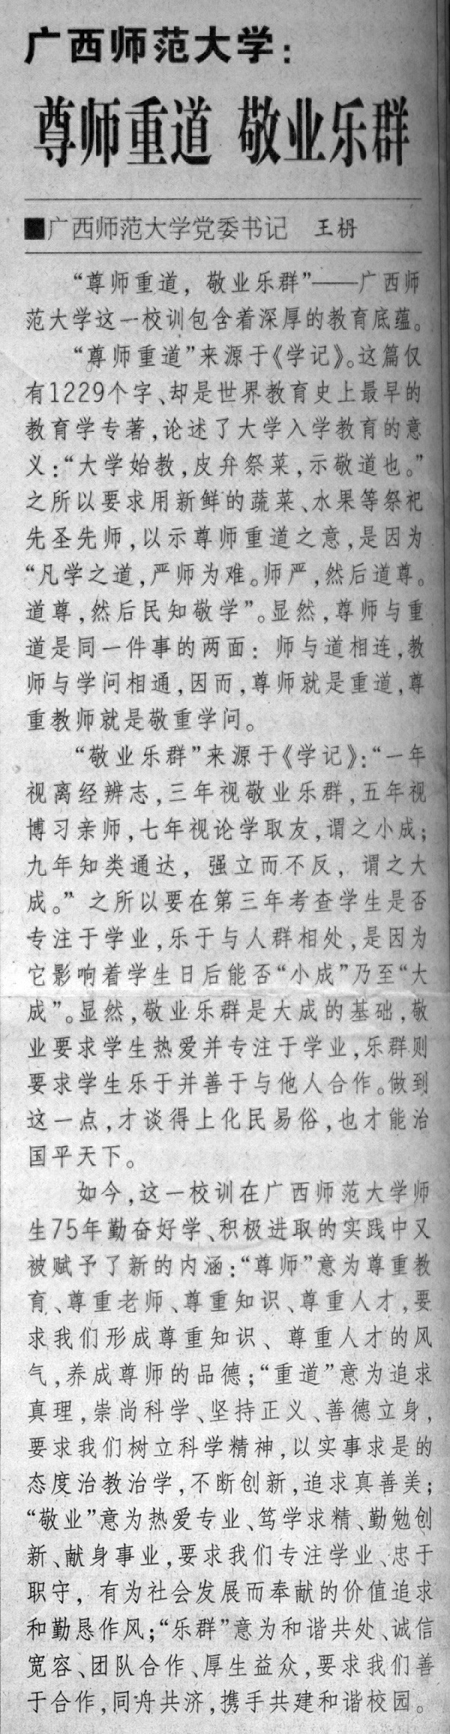 2007年12月13日，《中国教育报》刊登了关于我校校训的解读文章。